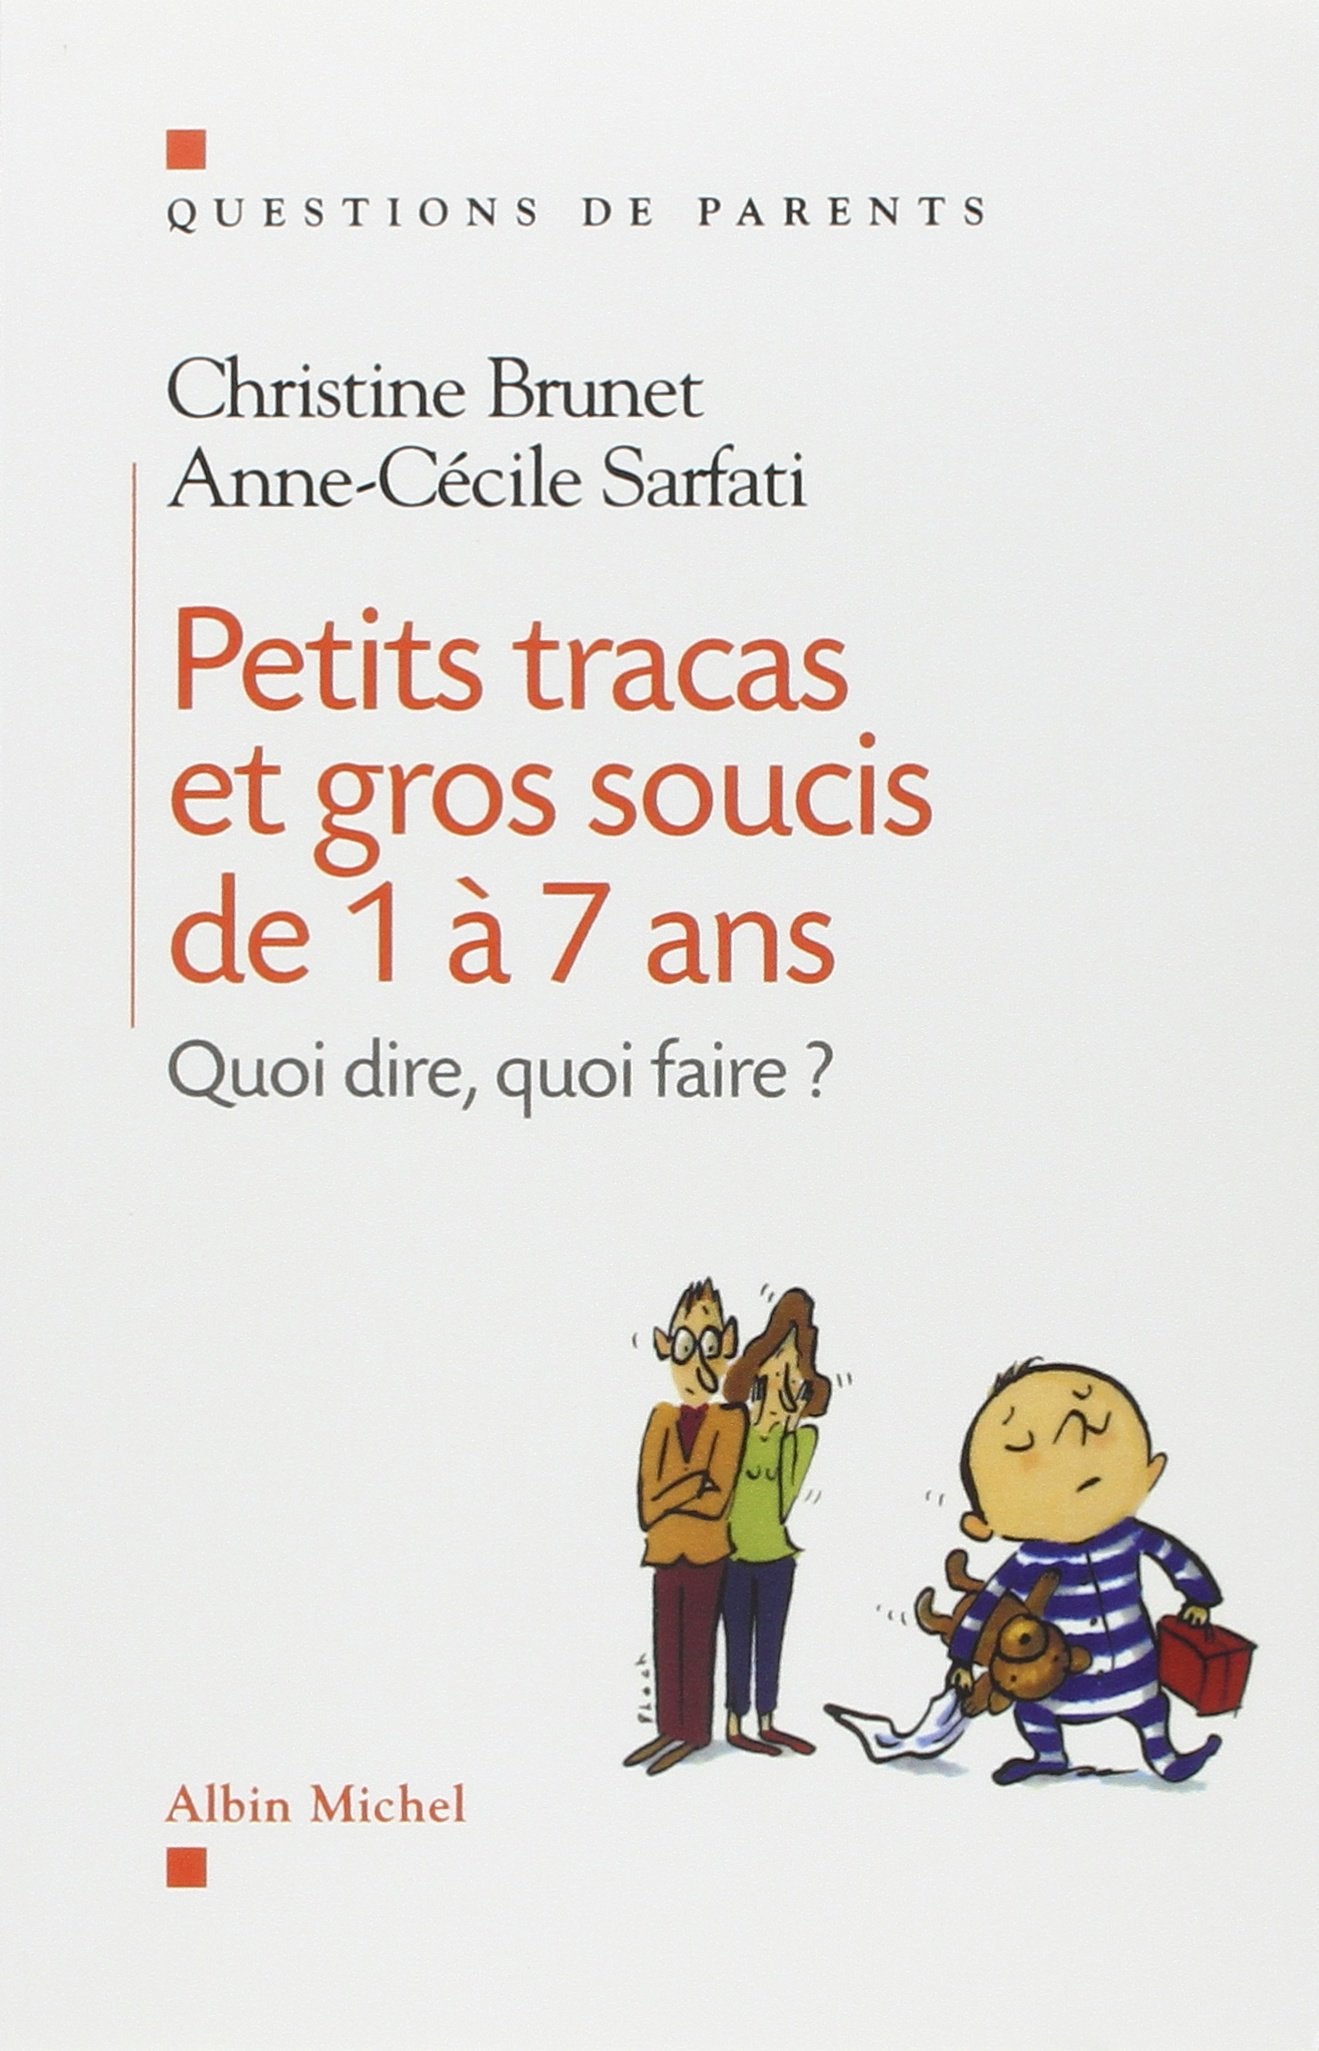 Livre ISBN 2226130942 Petits tracas et gros soucis de 1 à 7 ans : quoi dire, quoi faire? (Christine Brunet)